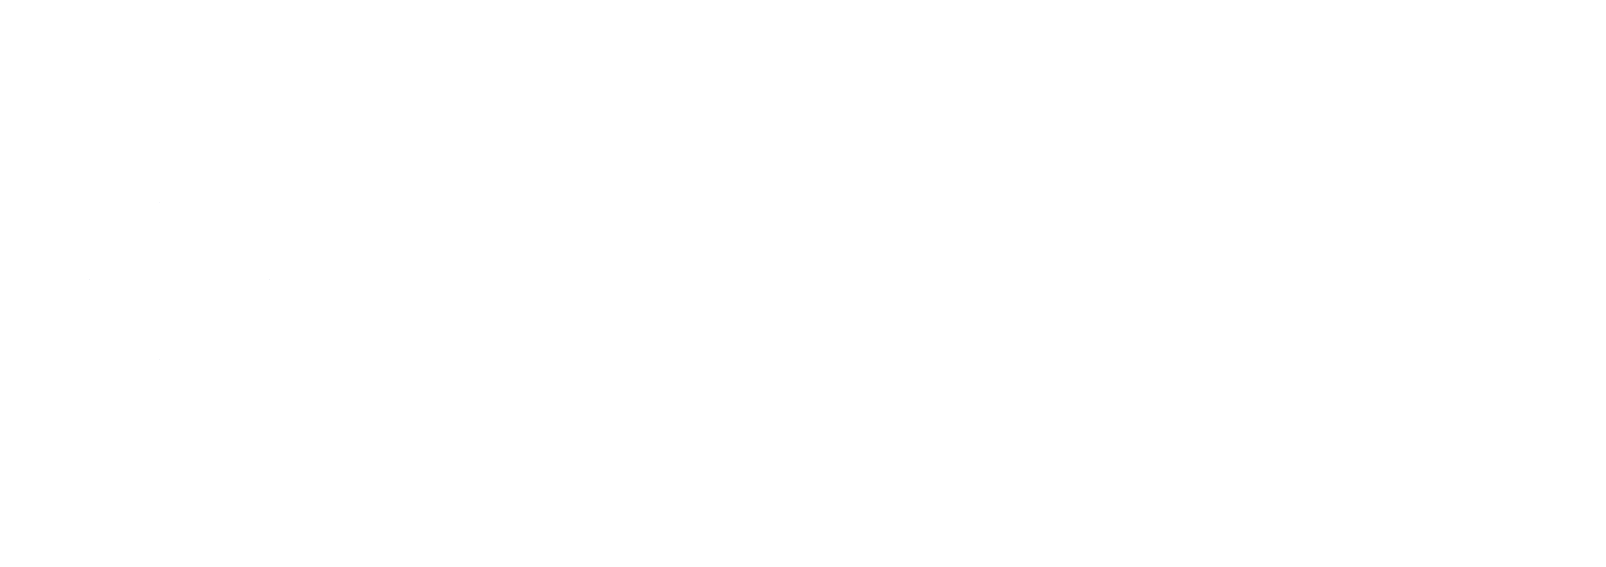 Hotel Bertiami